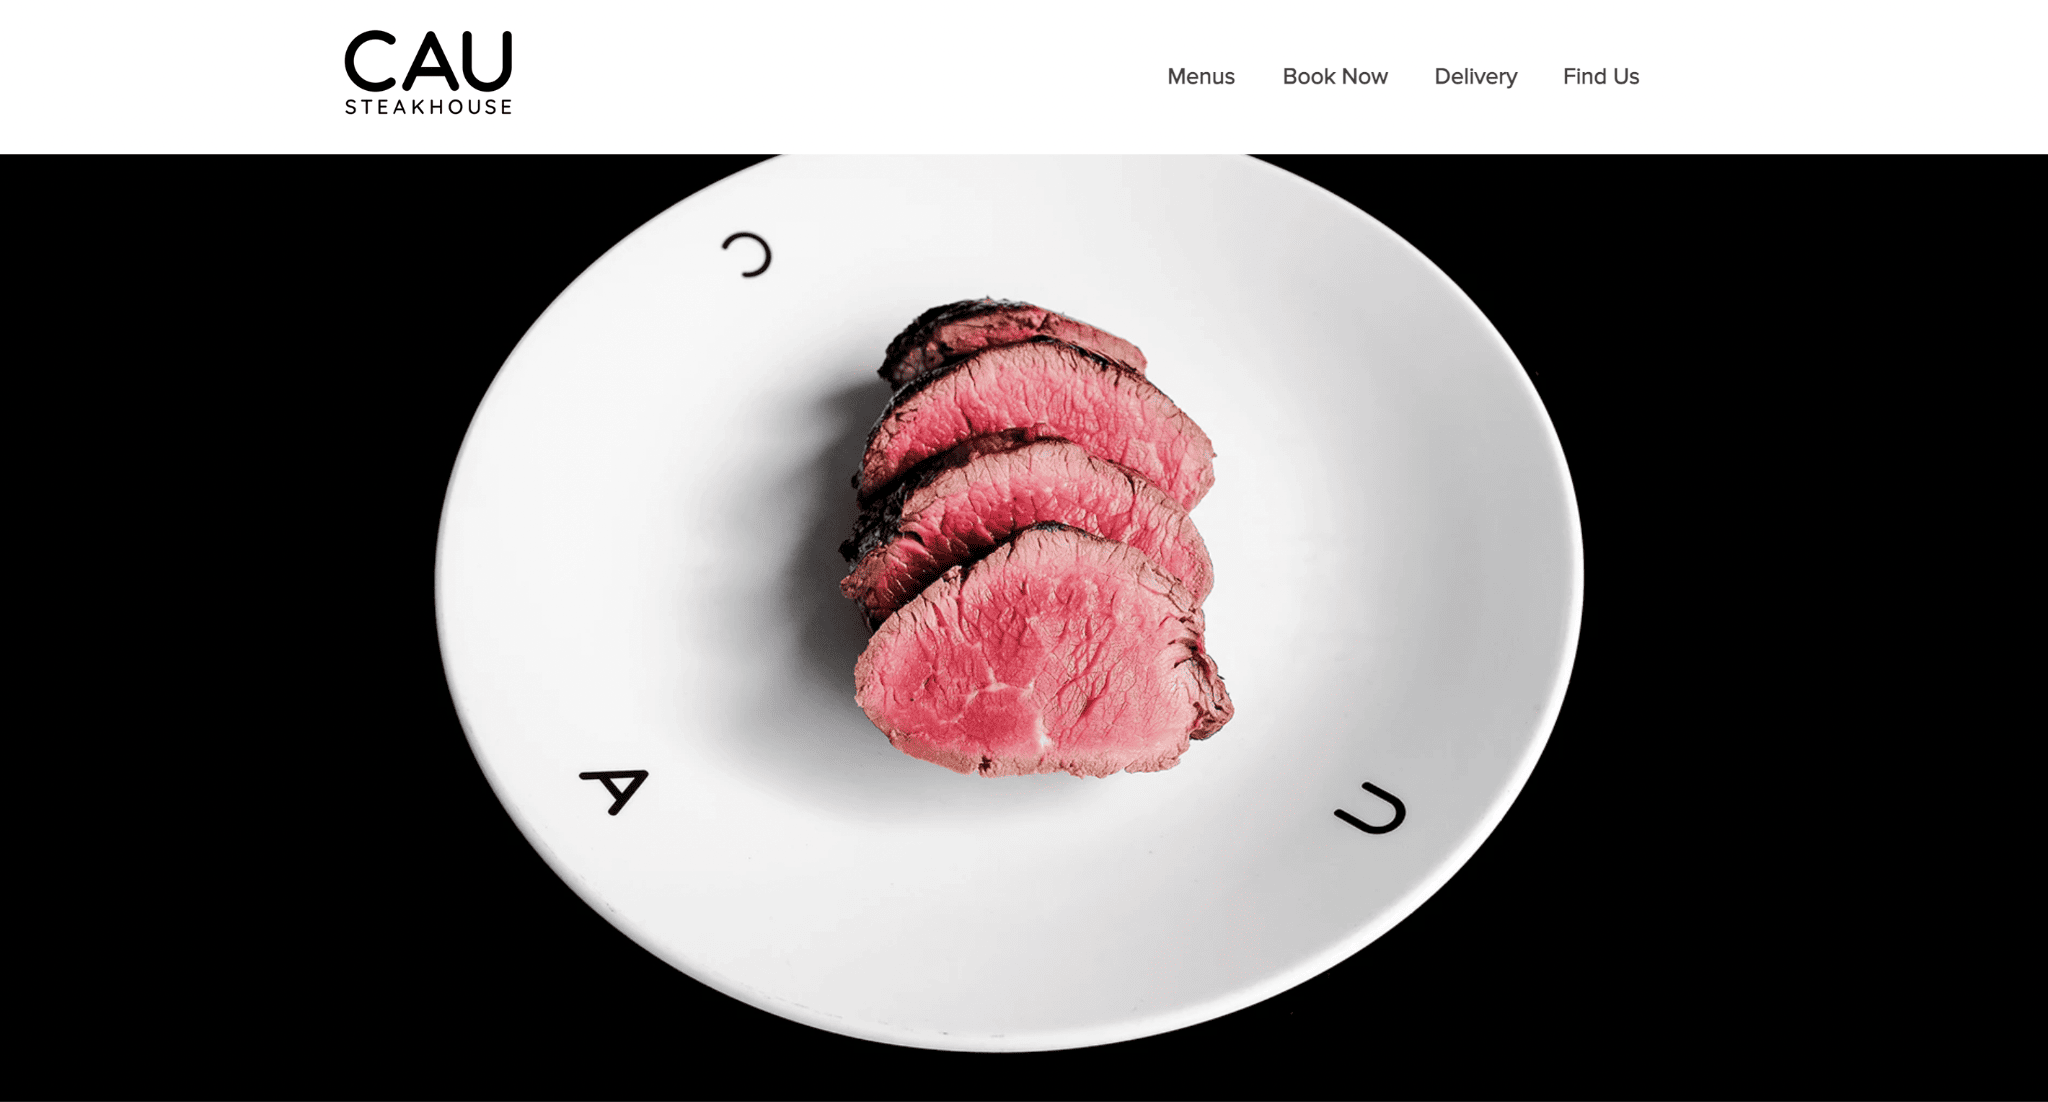 Wix 餐厅网站 - cau